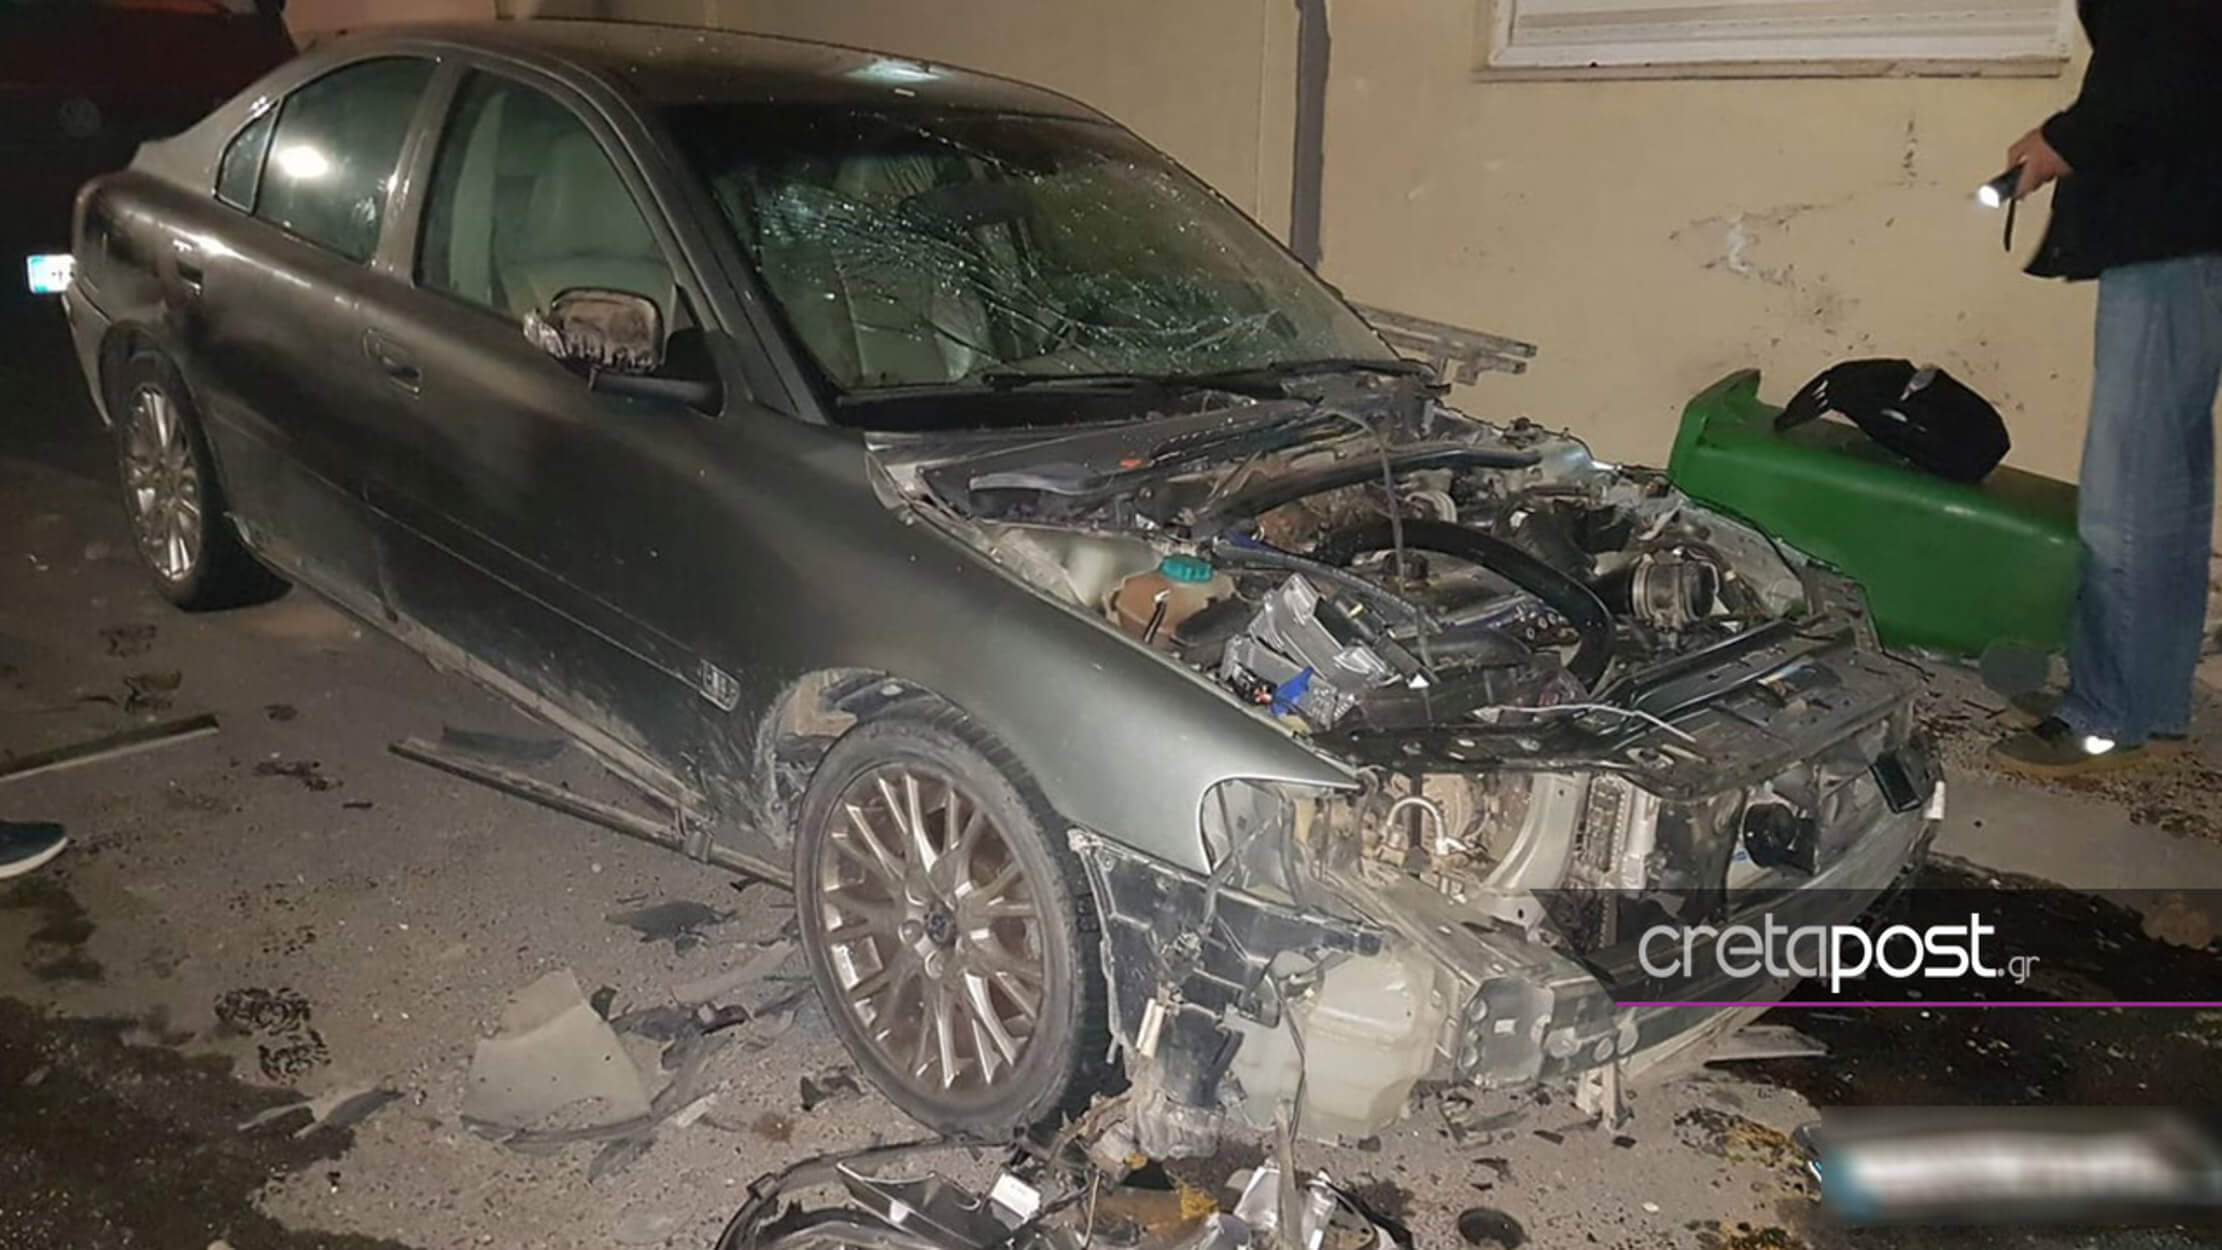 Ηράκλειο: Οι εικόνες από την έκρηξη αυτοκινήτου στο κέντρο του Ηρακλείου